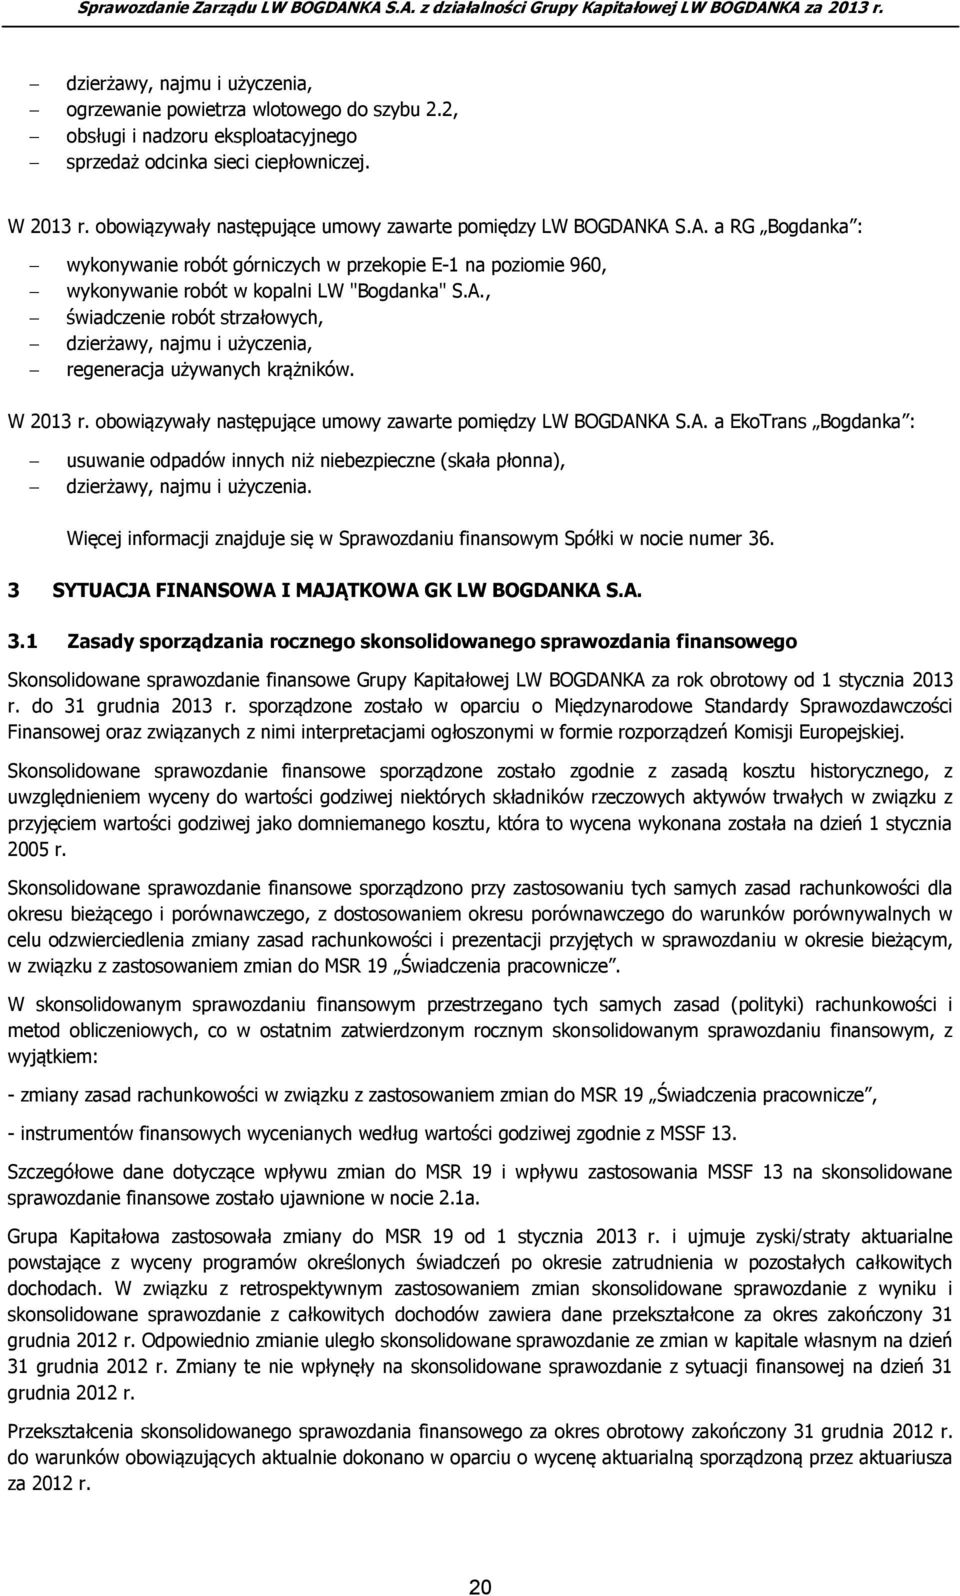 W 2013 r. obowiązywały następujące umowy zawarte pomiędzy LW BOGDANKA S.A. a EkoTrans Bogdanka : usuwanie odpadów innych niż niebezpieczne (skała płonna), dzierżawy, najmu i użyczenia.